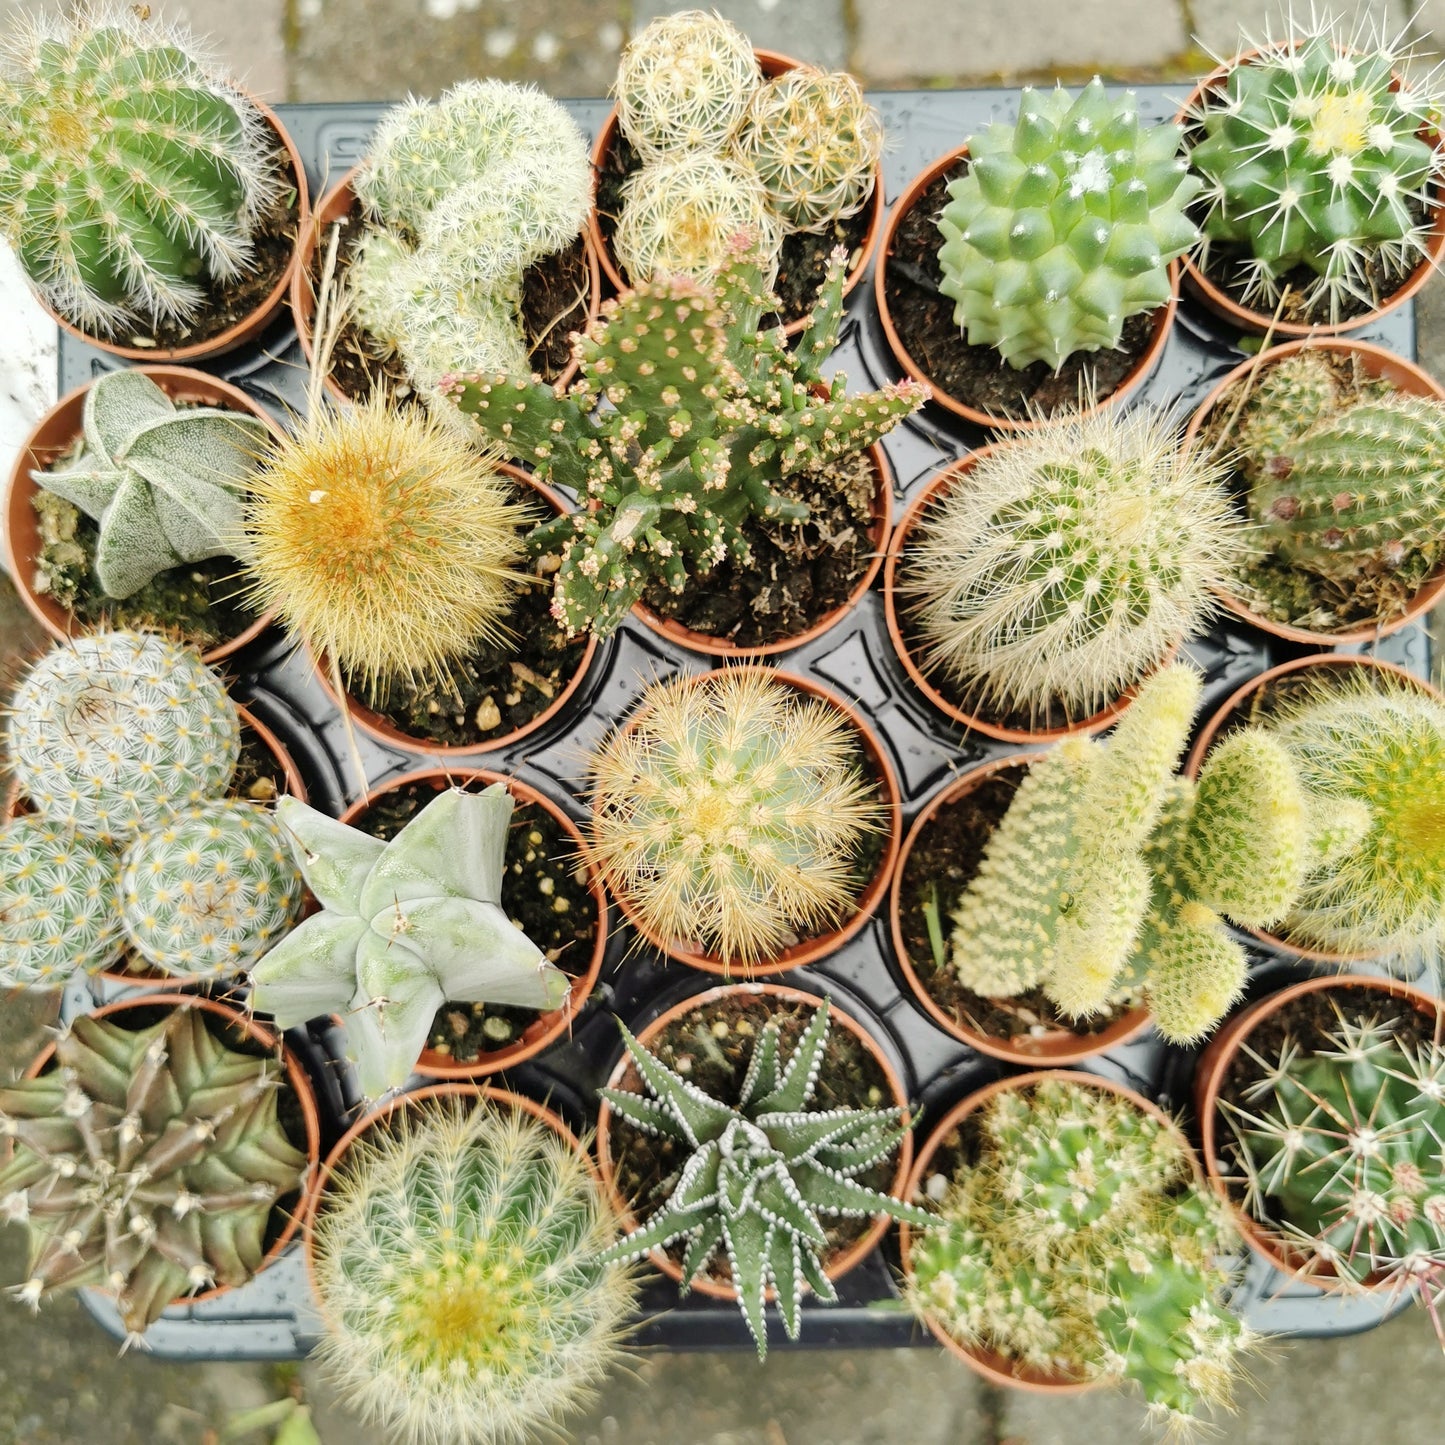 Cactus Cacti House Plants 5.5cm Pot Random Selection